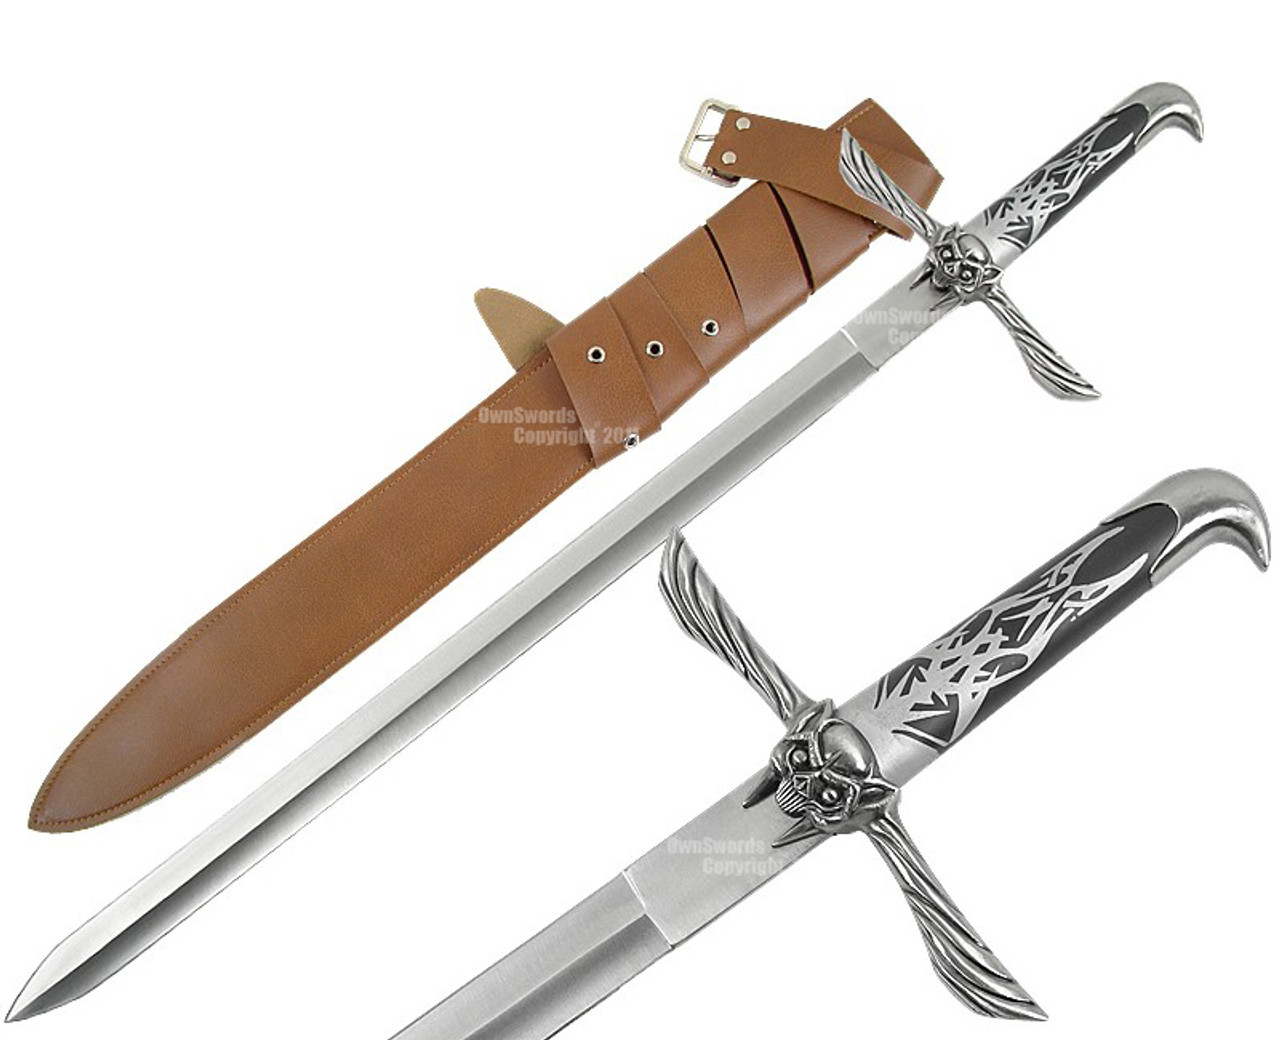 Sword of altair ac2